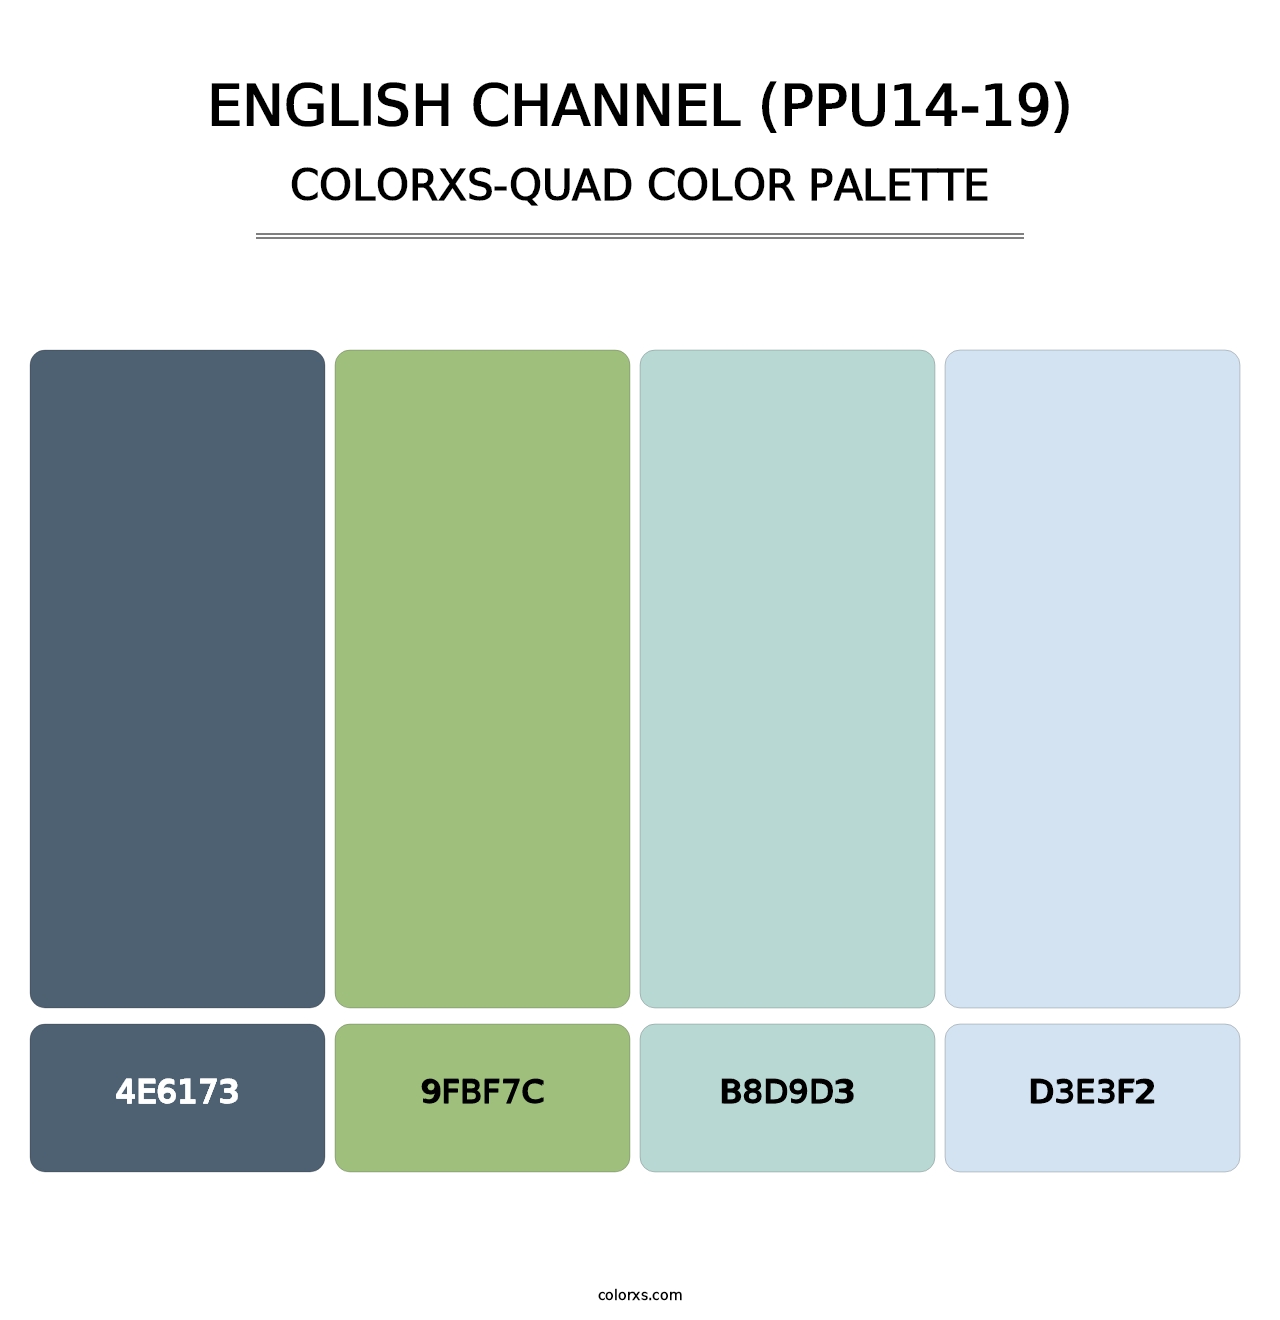 English Channel (PPU14-19) - Colorxs Quad Palette